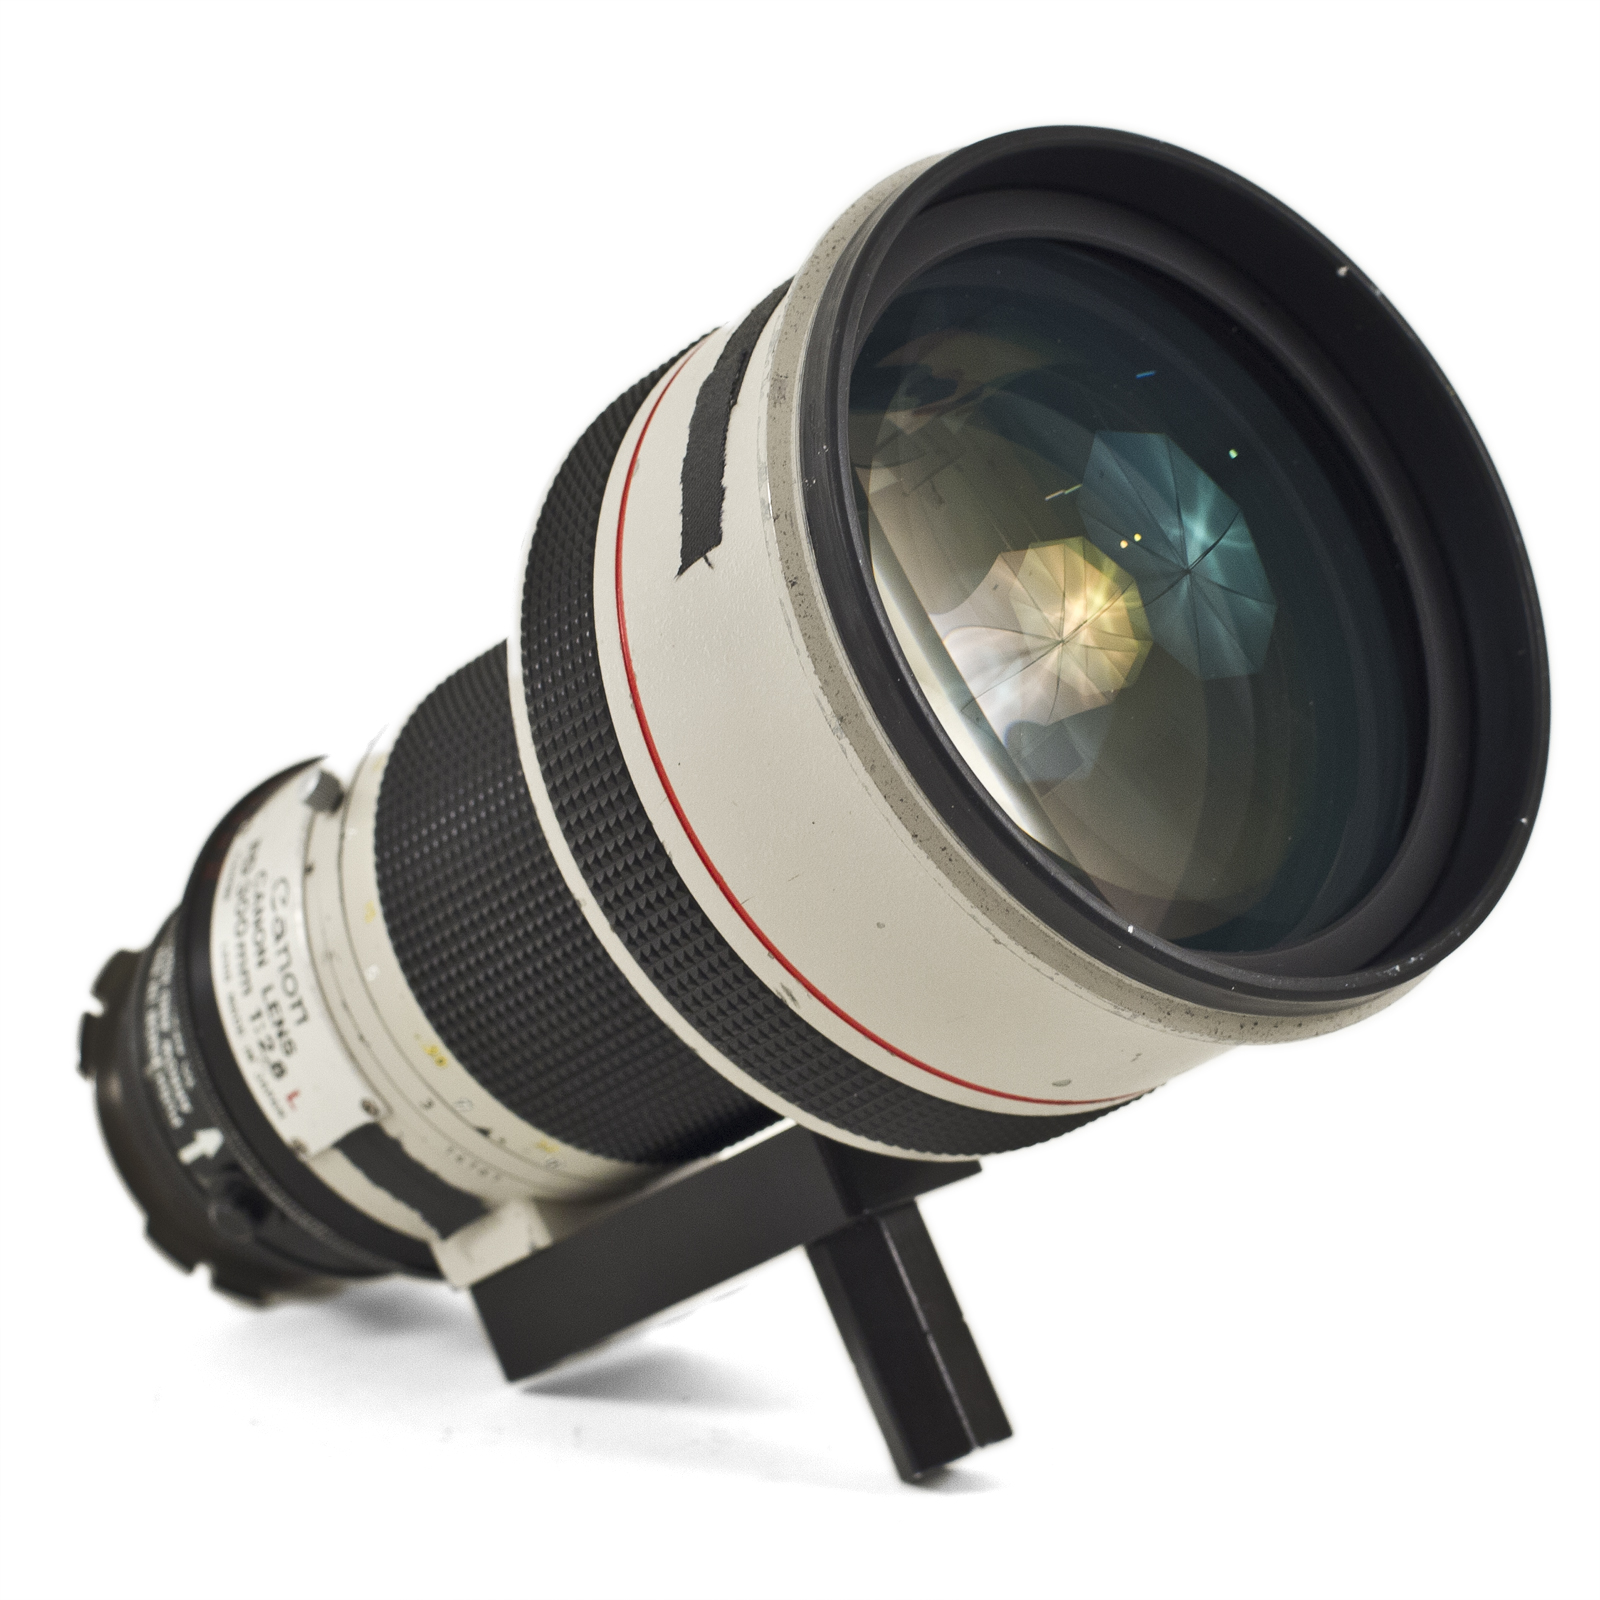 300mm T2.8 Canon Telephoto PL Mount Lens